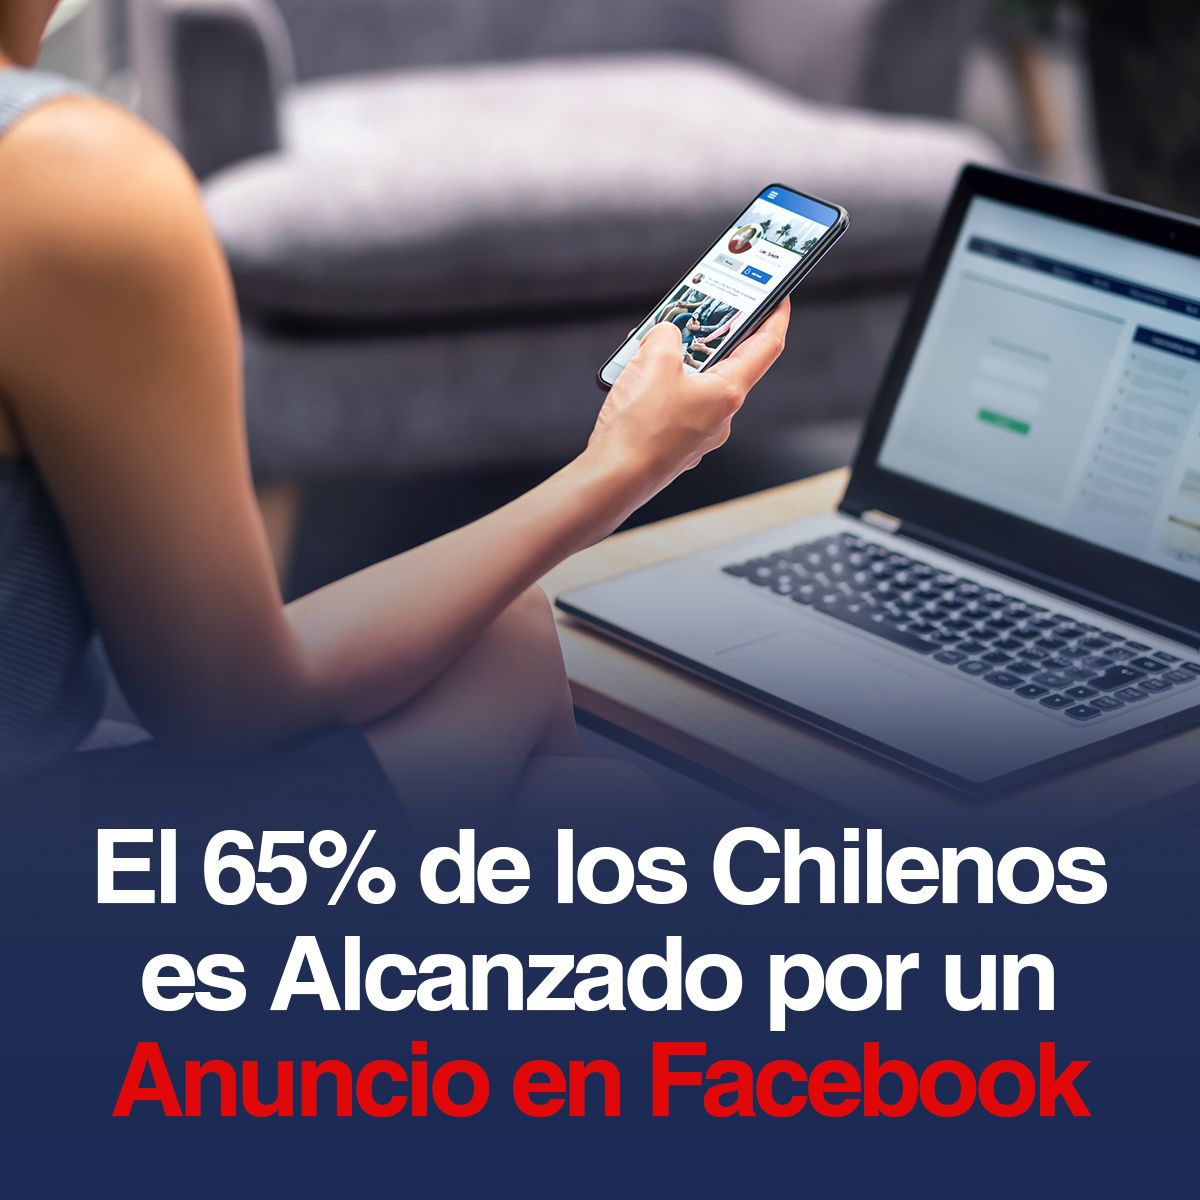 El 65% de los Chilenos es Alcanzado por un Anuncio en Facebook